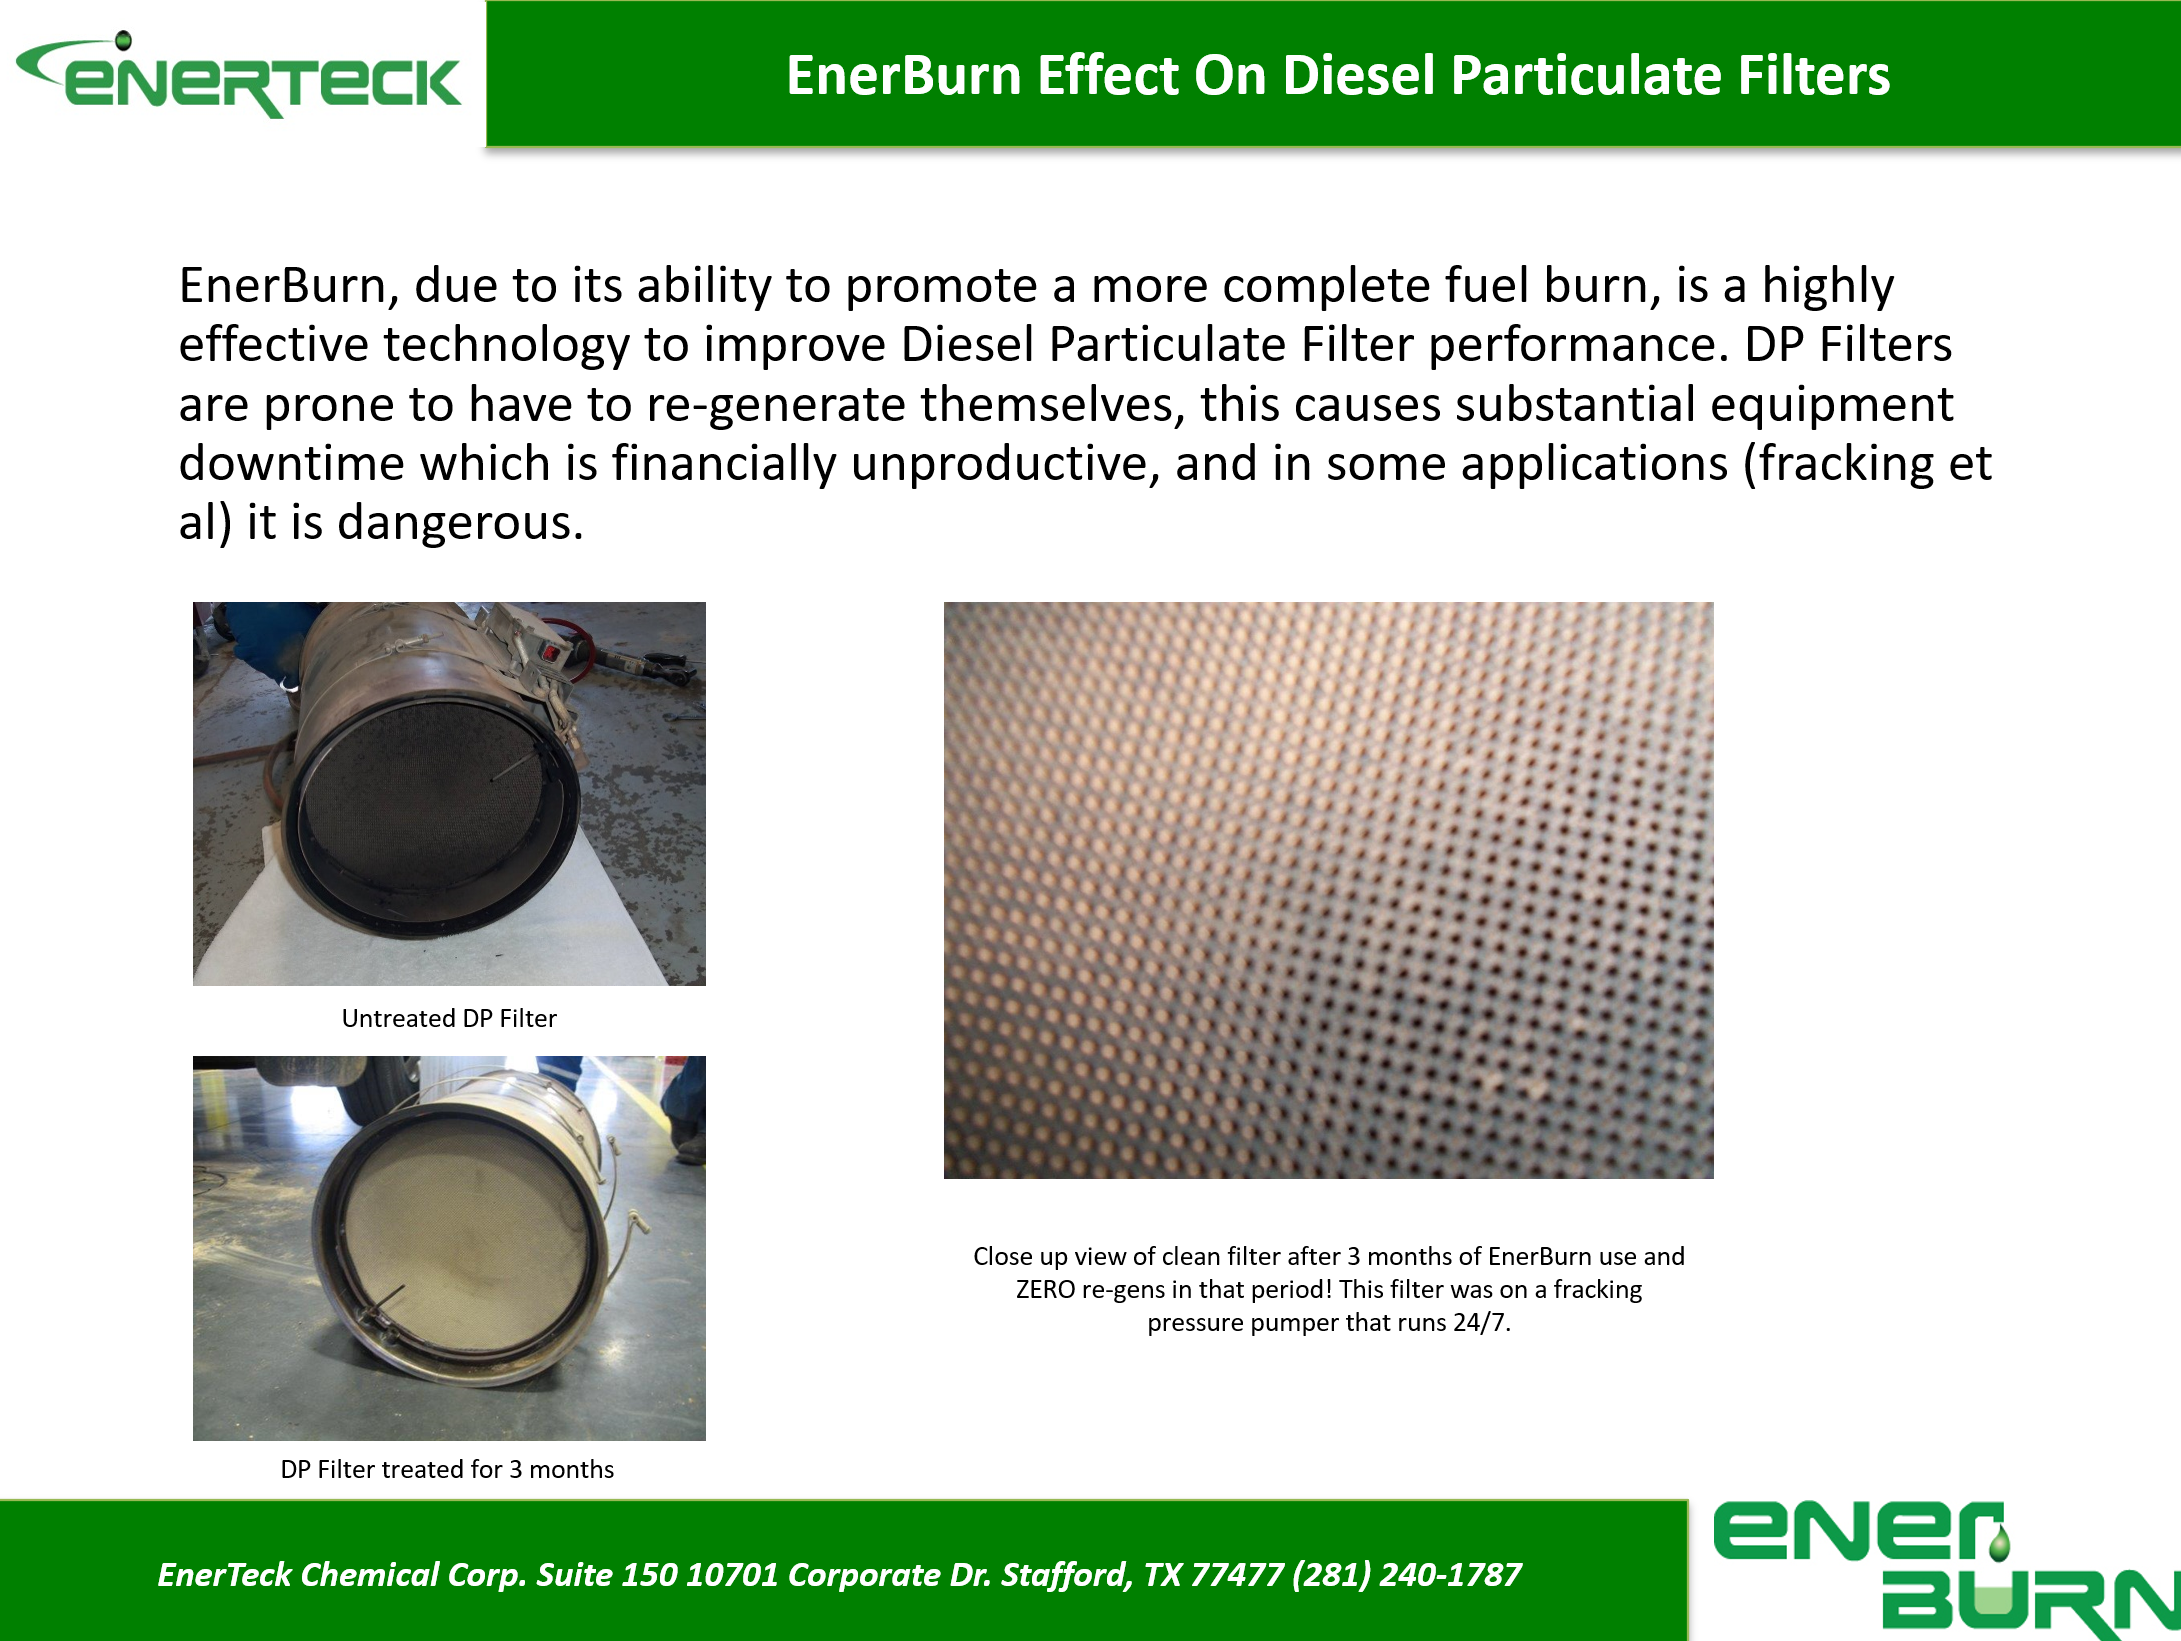 EnerBurn Effect on Diesel Particulate Filters